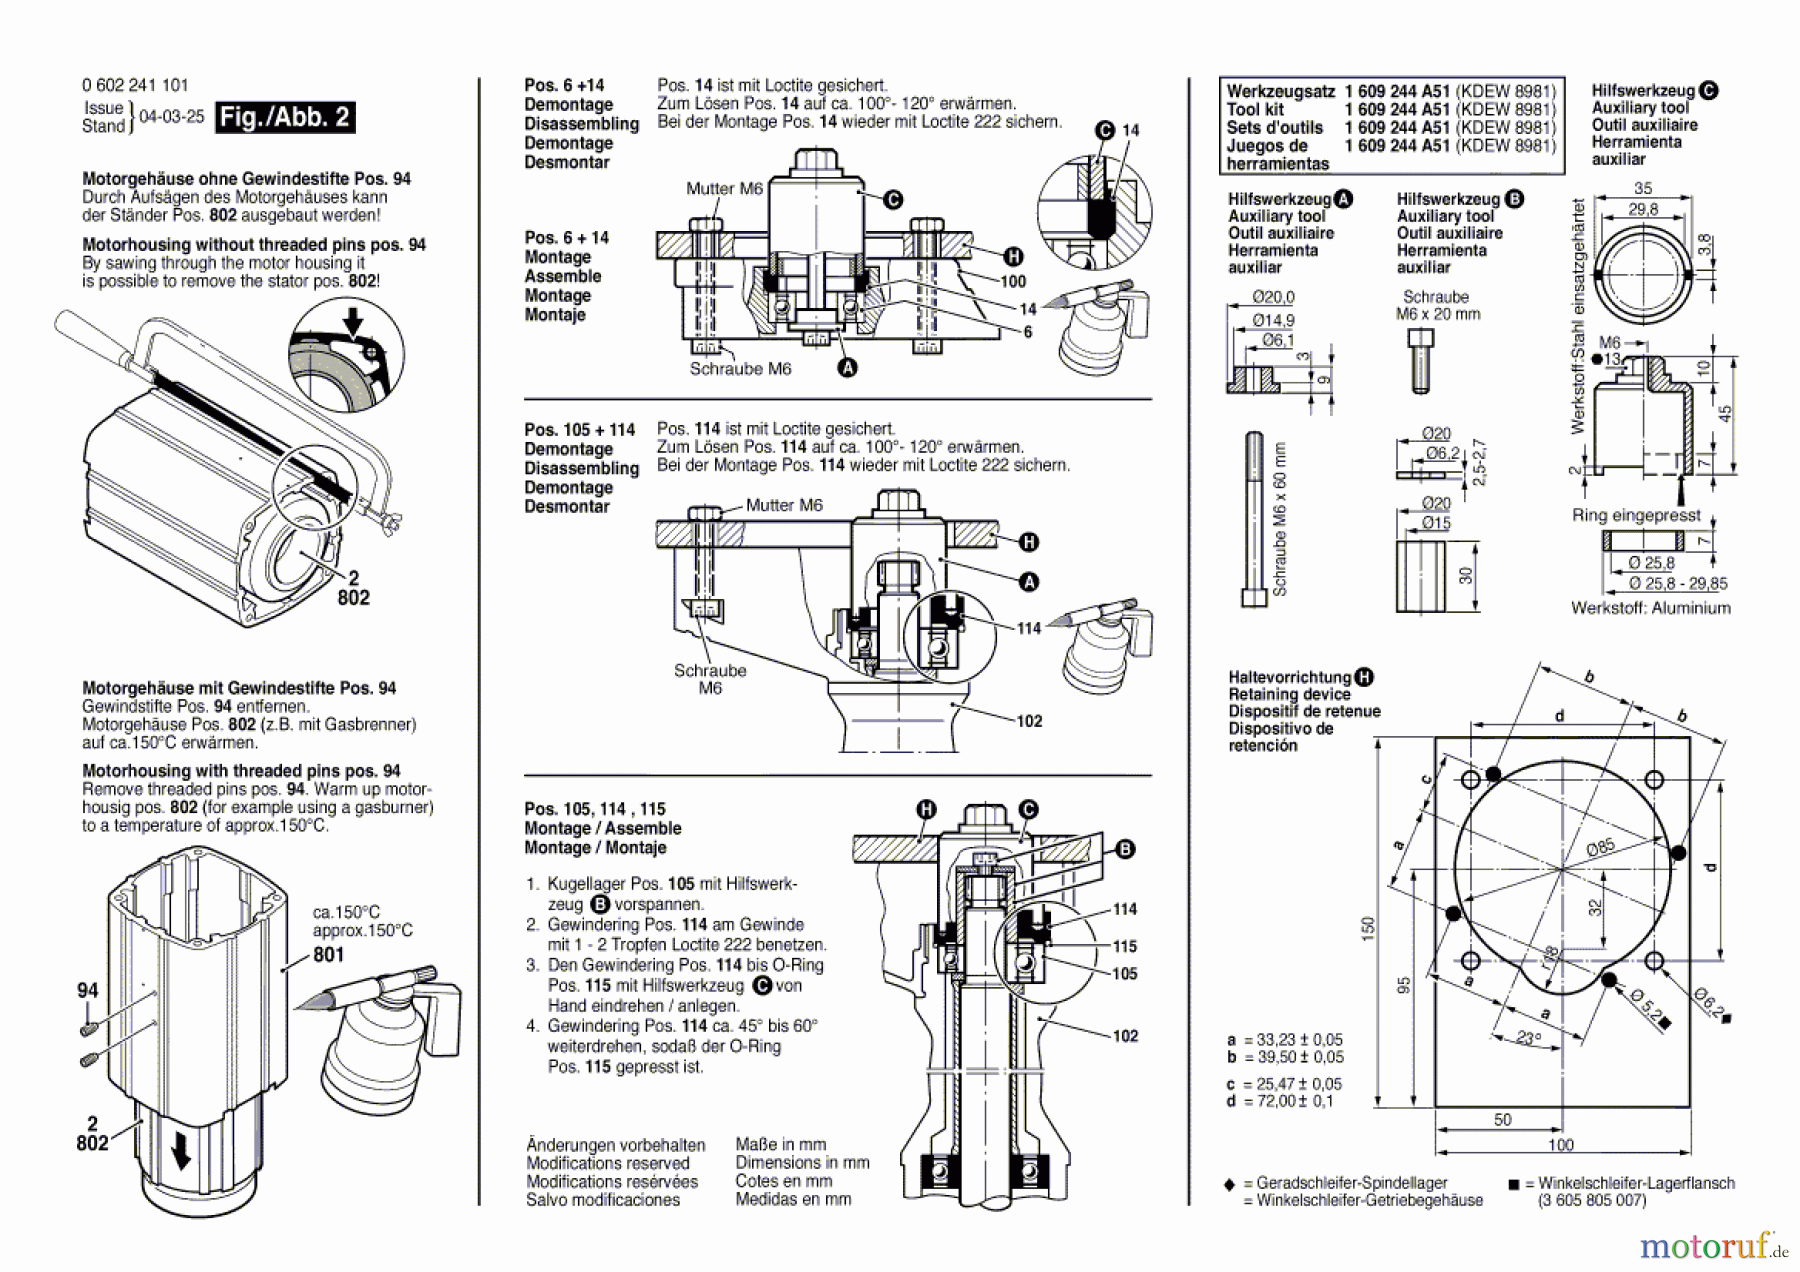  Bosch Werkzeug Hf-Geradschleifer GERADSCHLEIFER 2 241 Seite 2